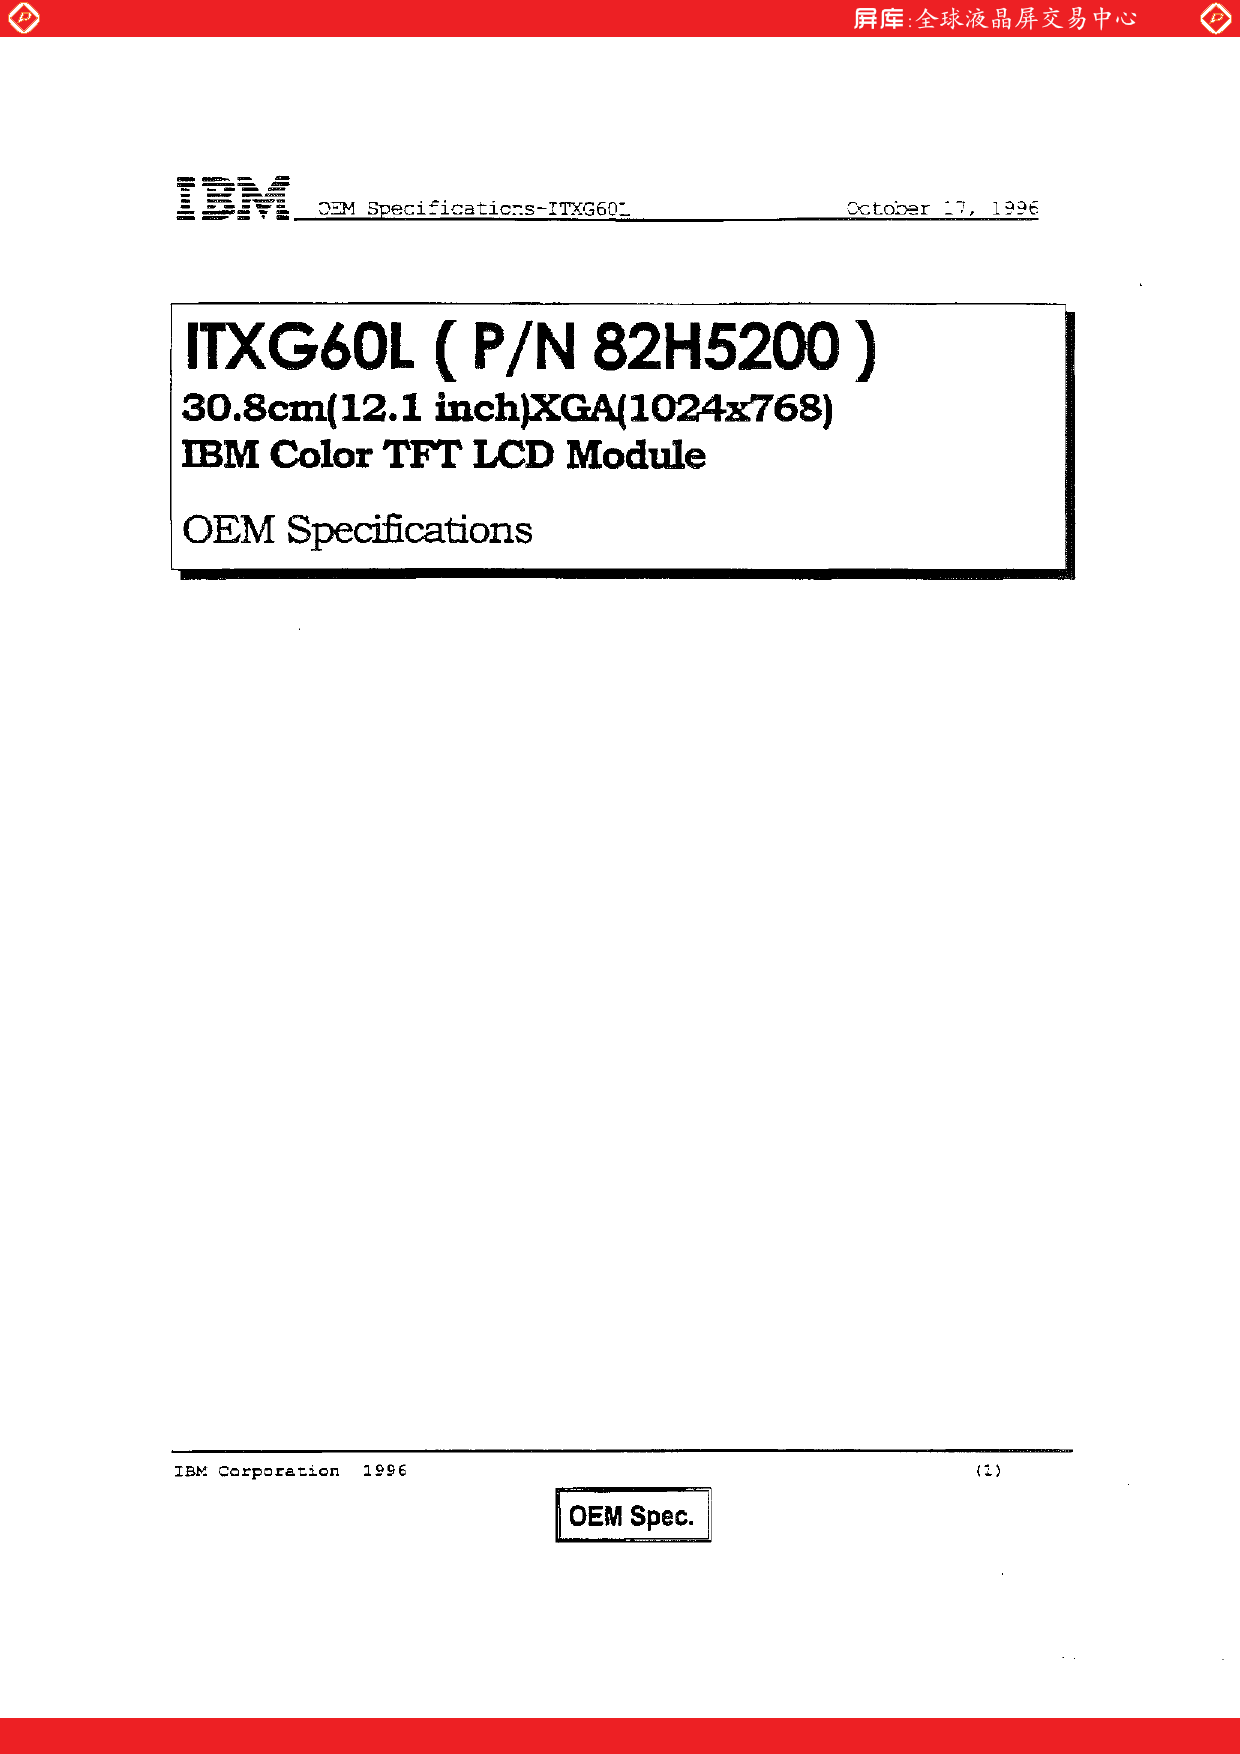 ITXG60L datasheet